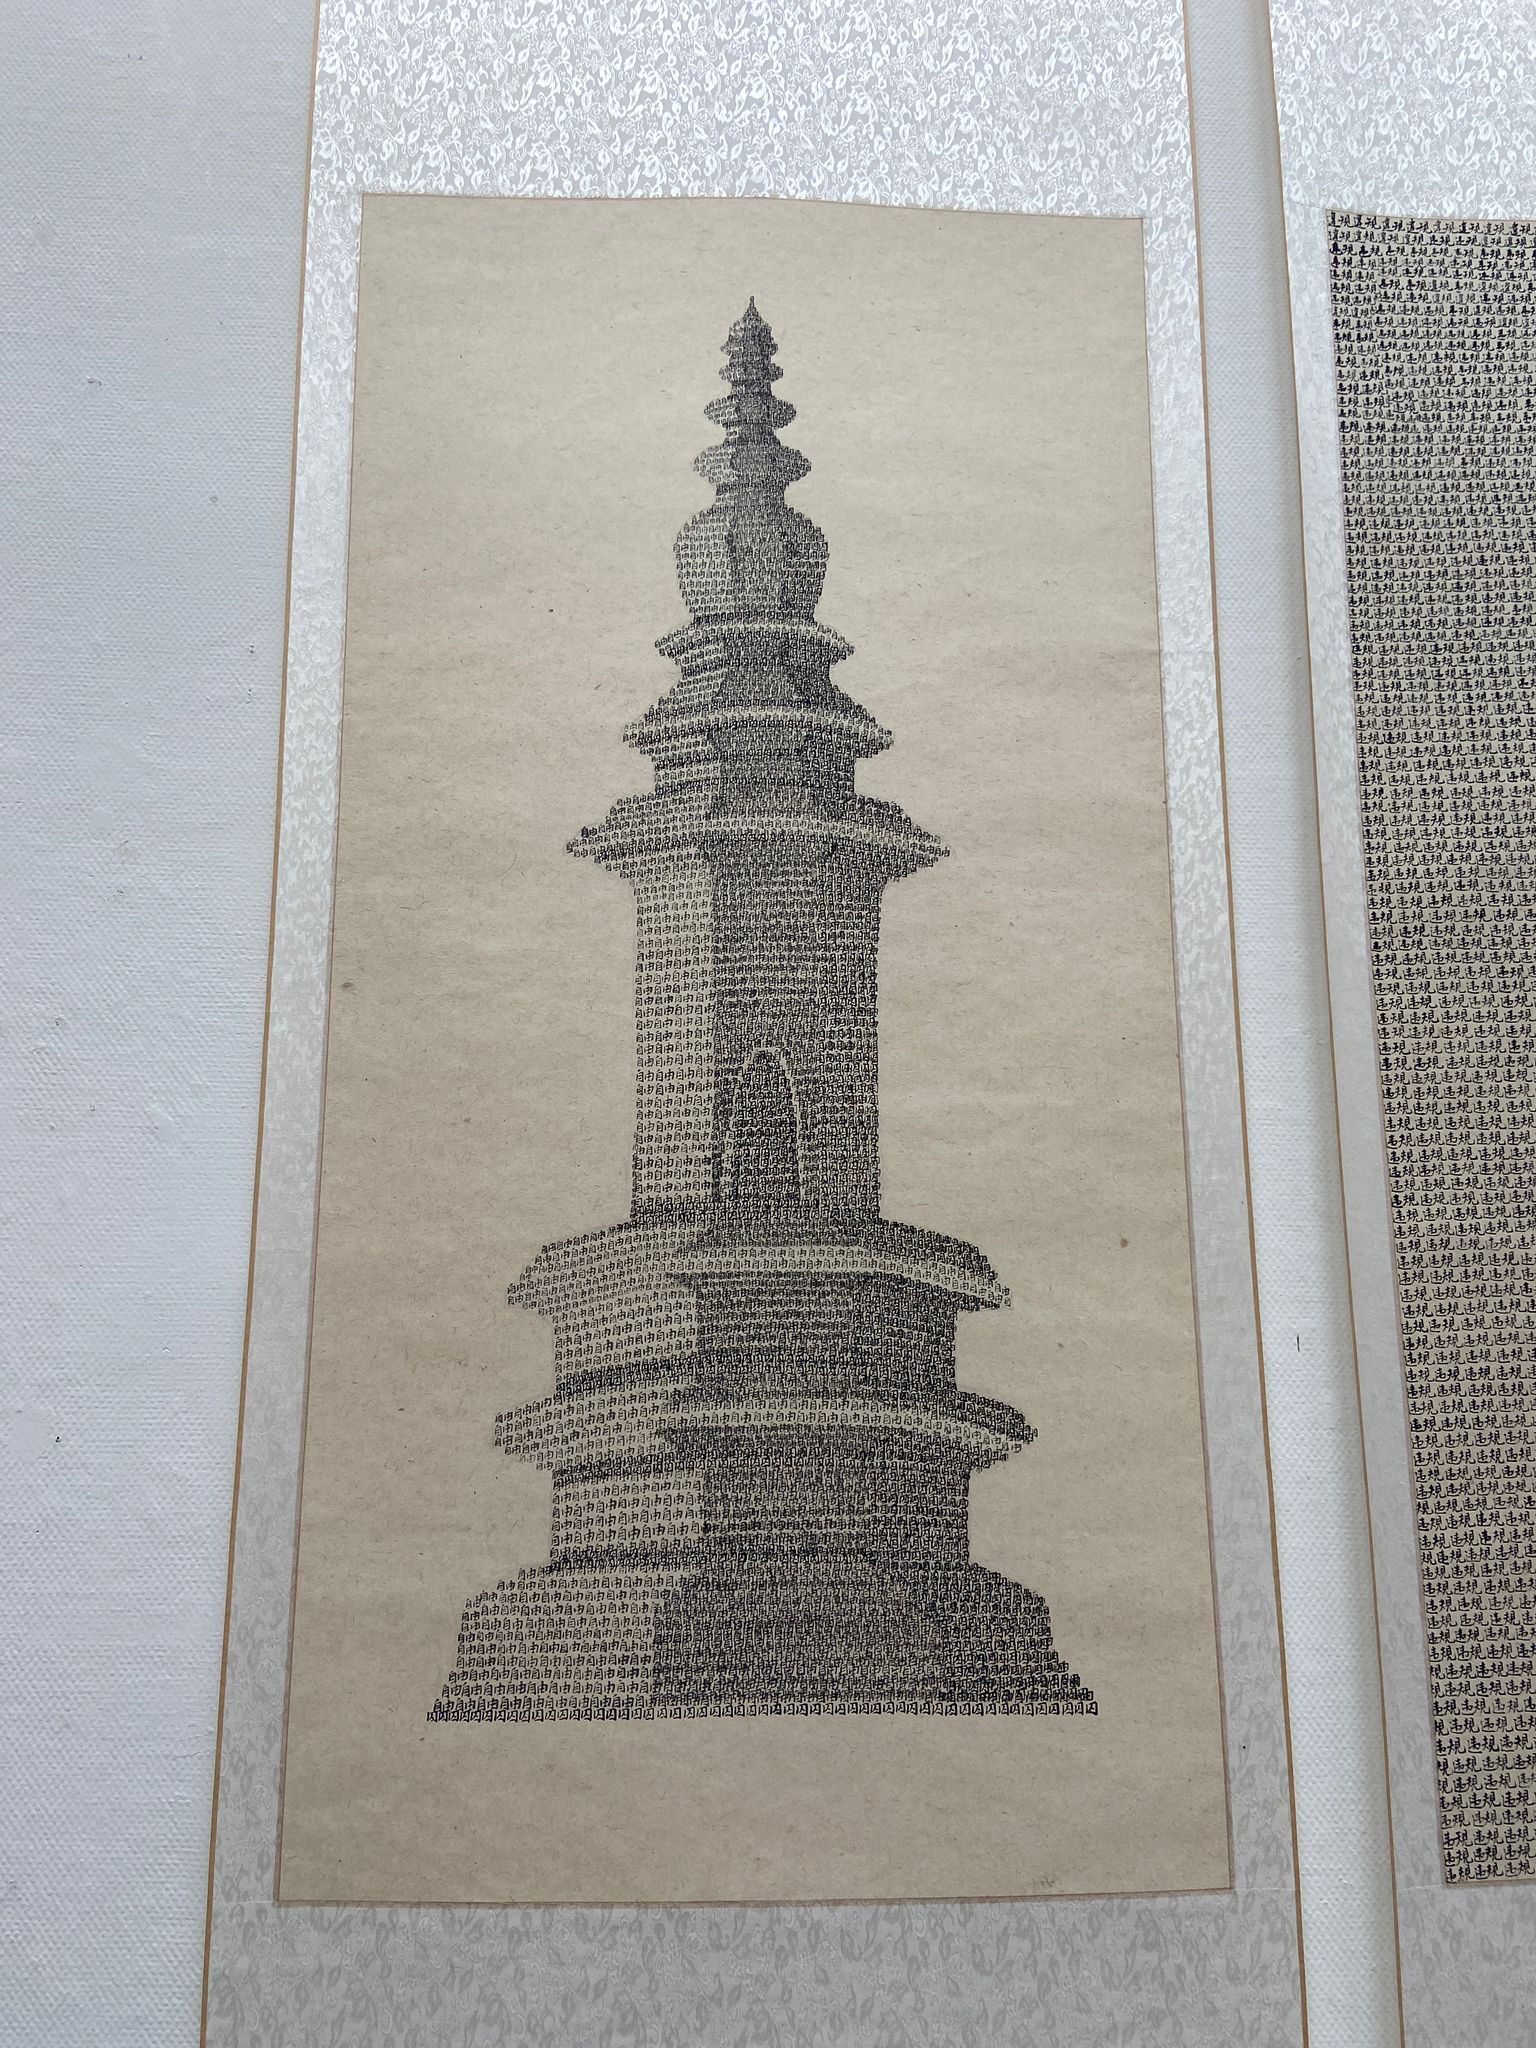 Hao Yang's Pagoda